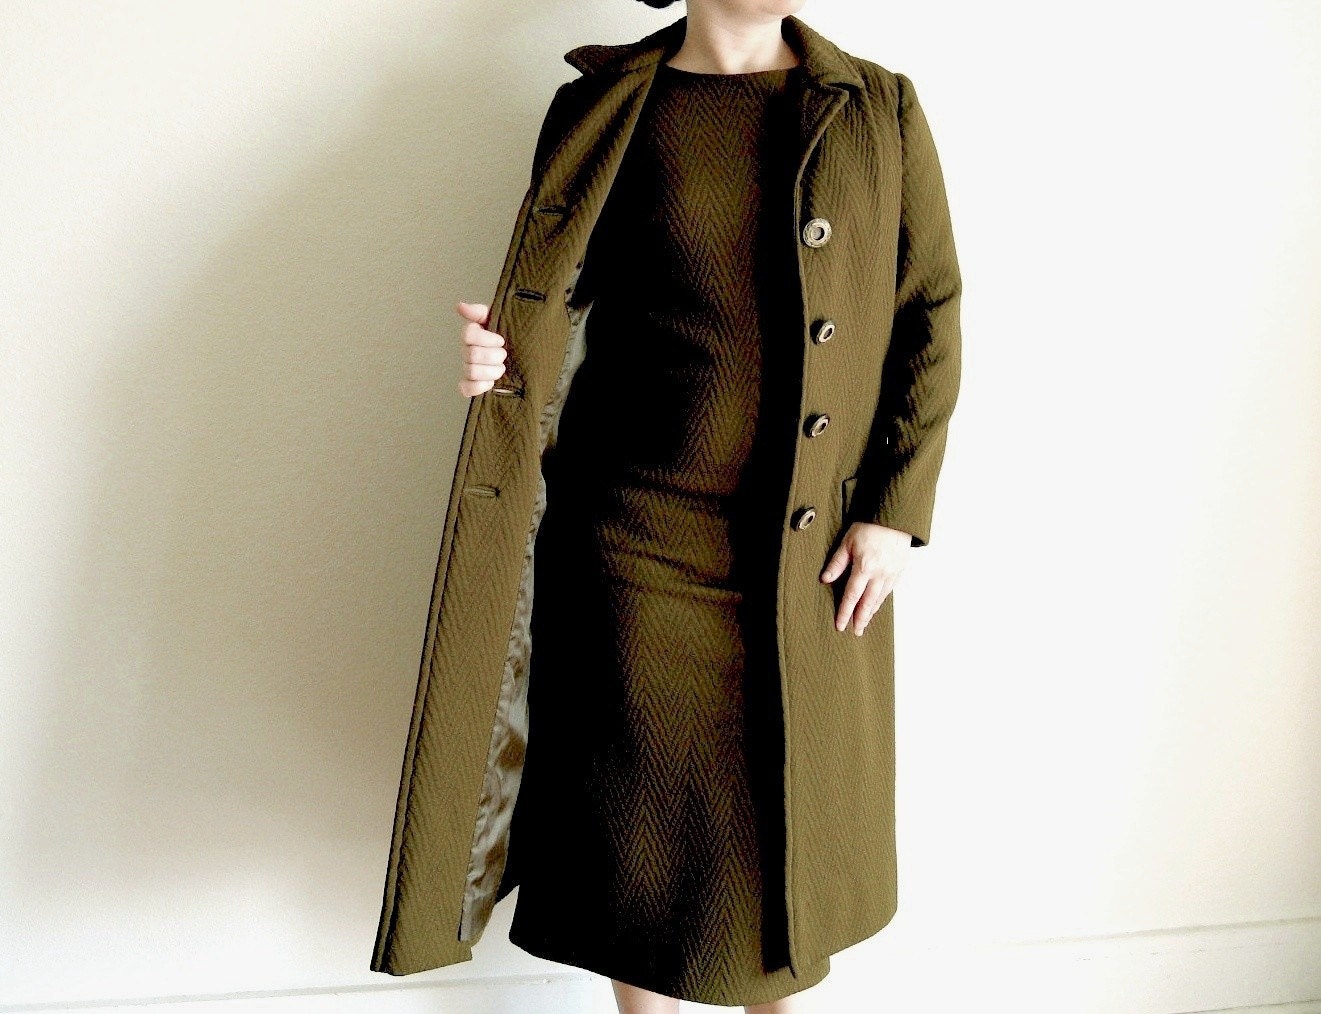 Vintage Dress - 60s Olive Green Mod Dress and Jacket